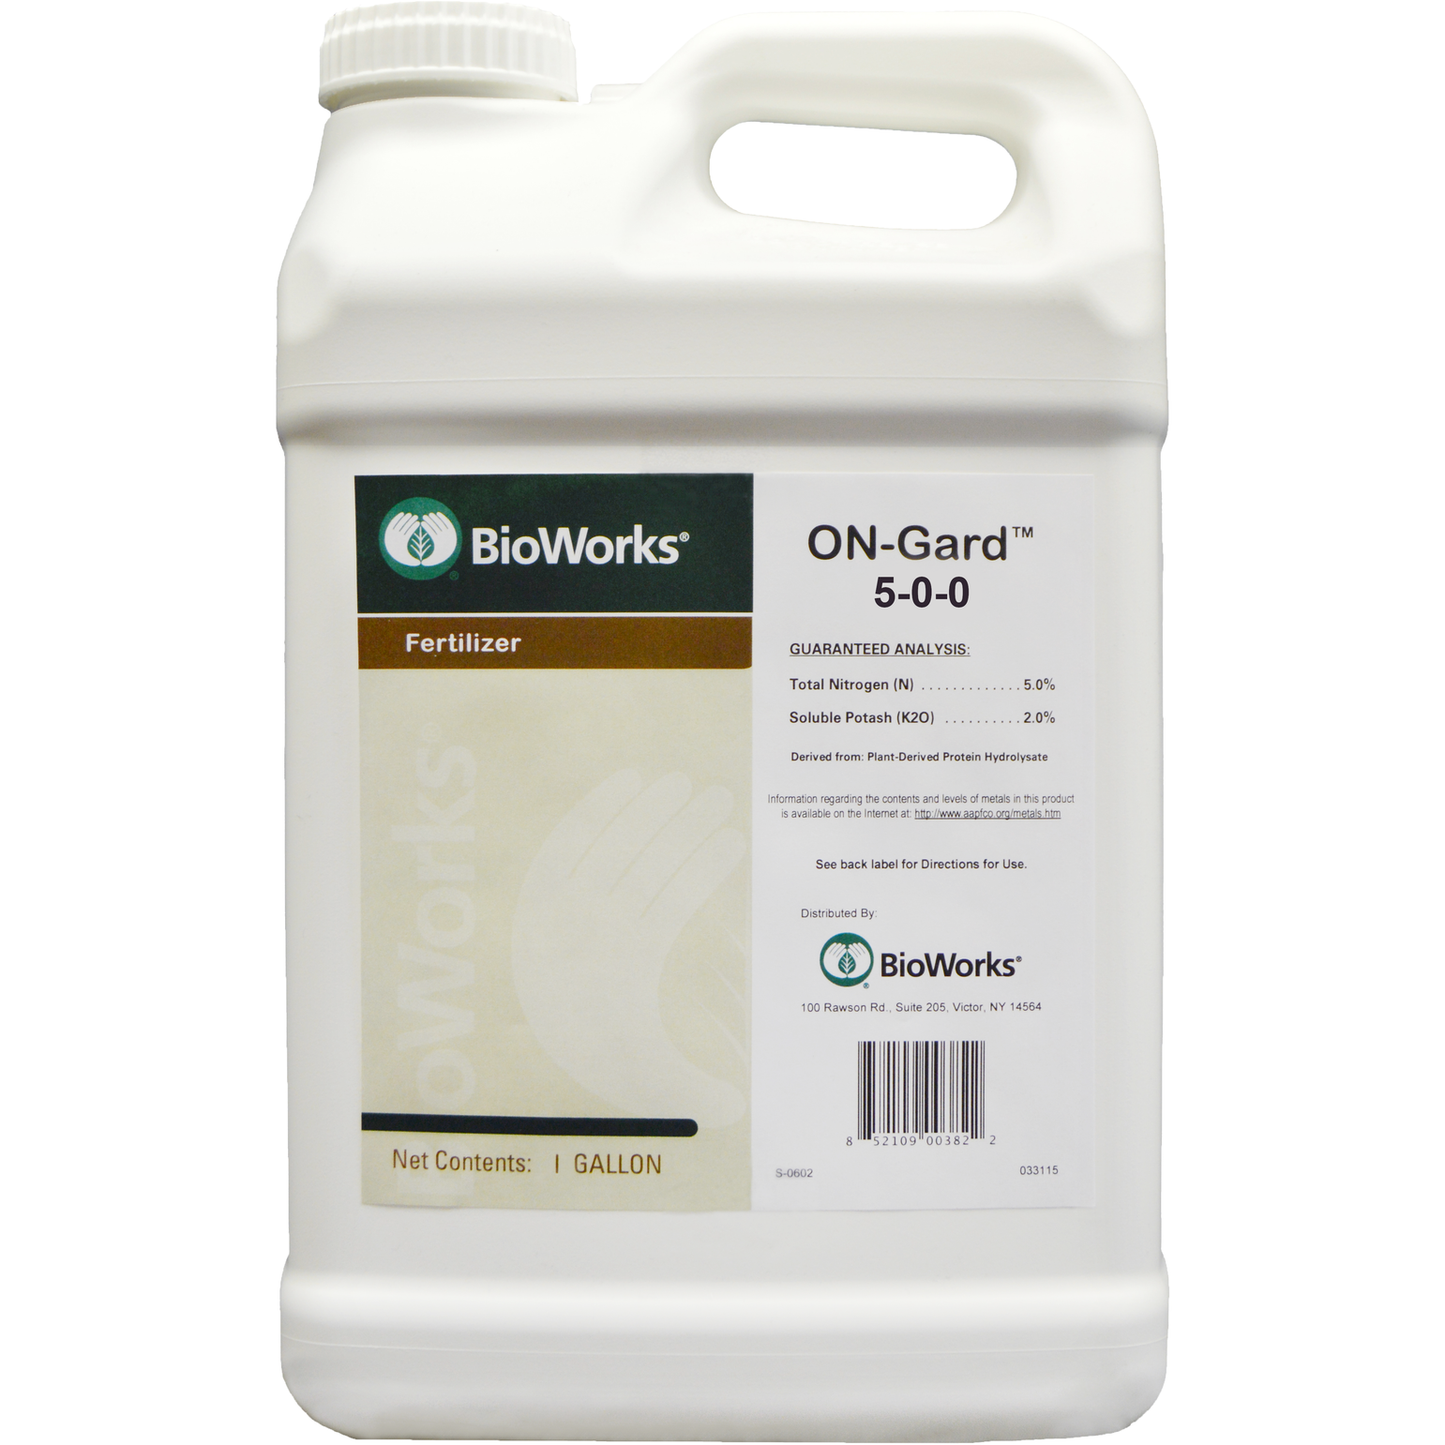 BioWorks ON-Gard 5-0-0